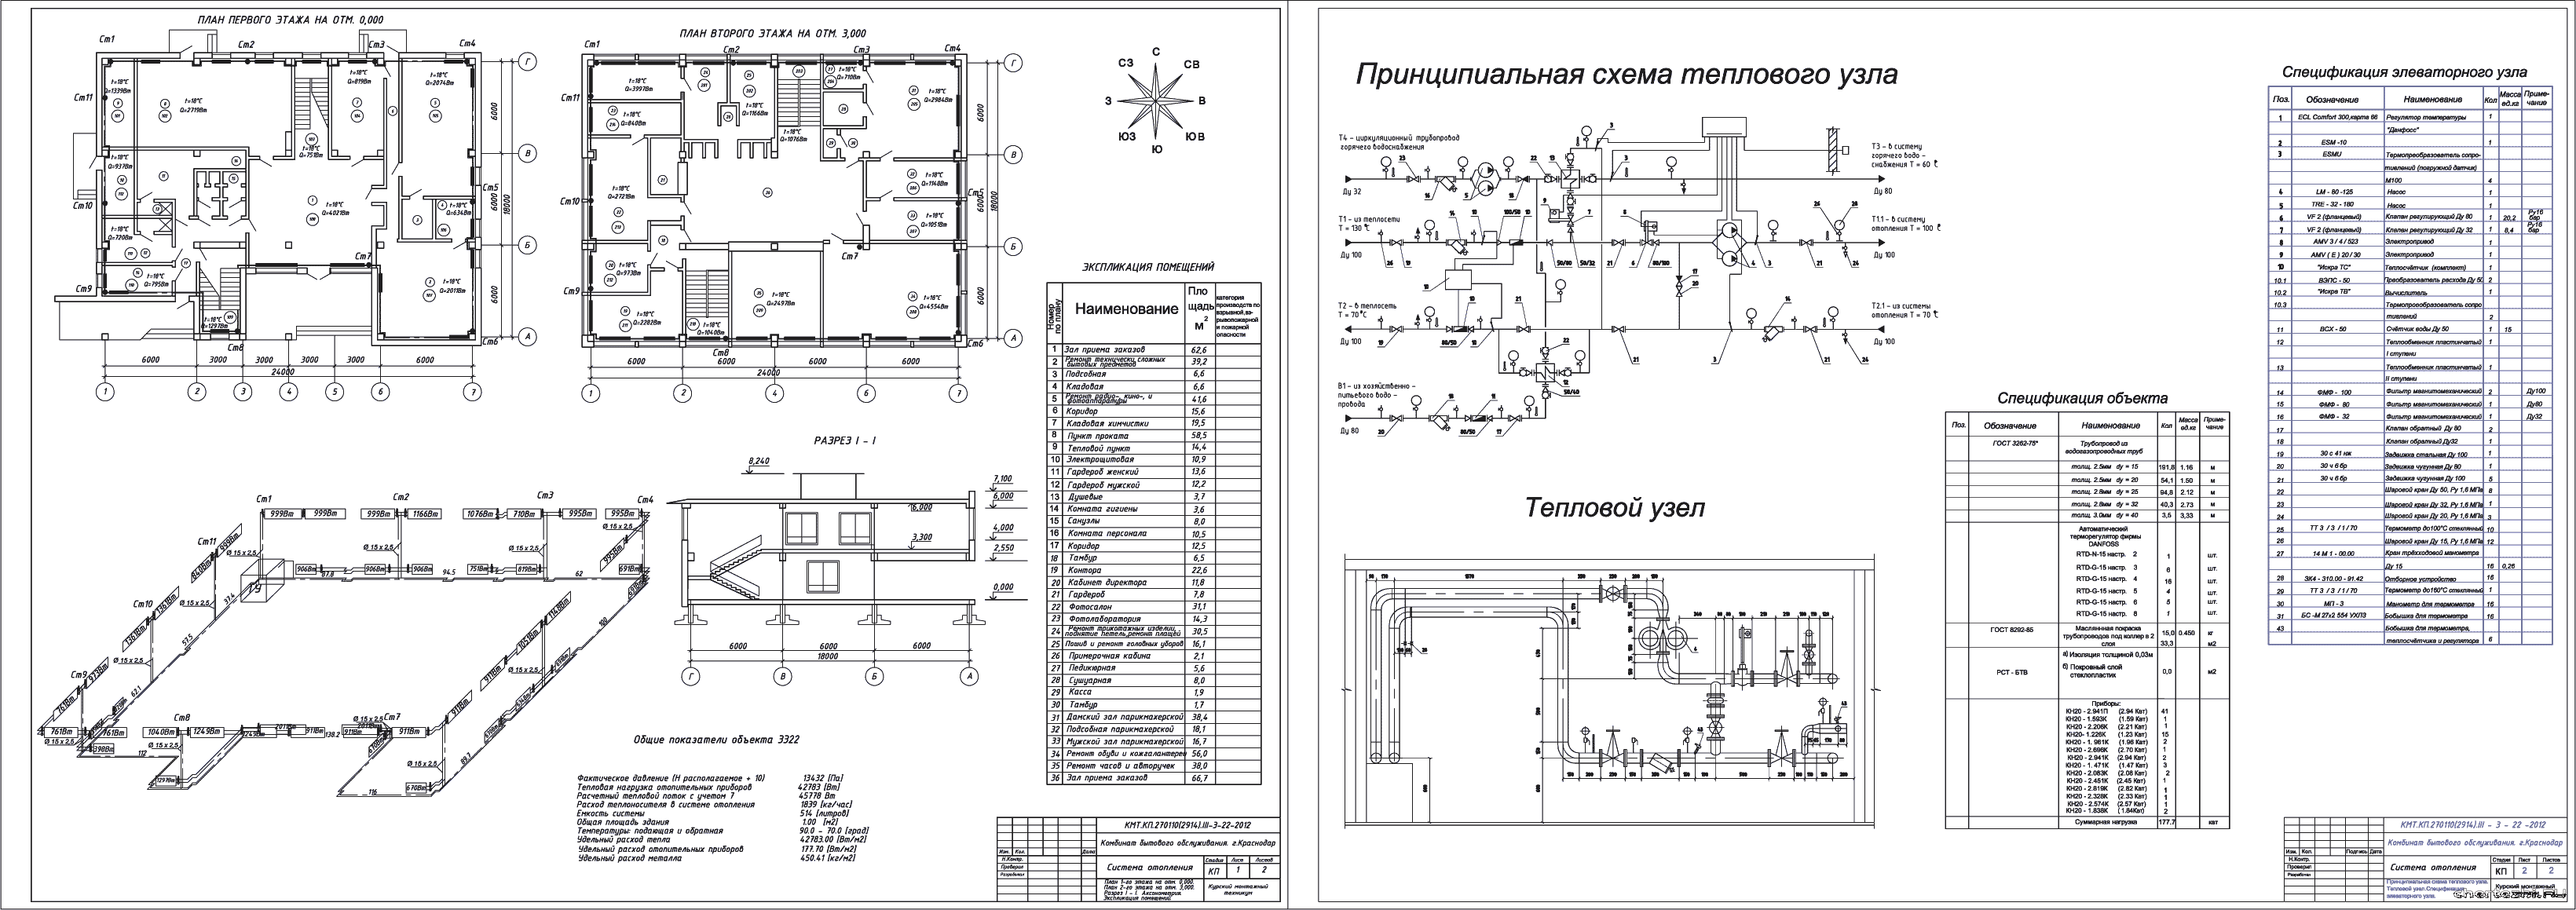 Курсовой проект (техникум) - Система отопления столовой в г. Краснодар